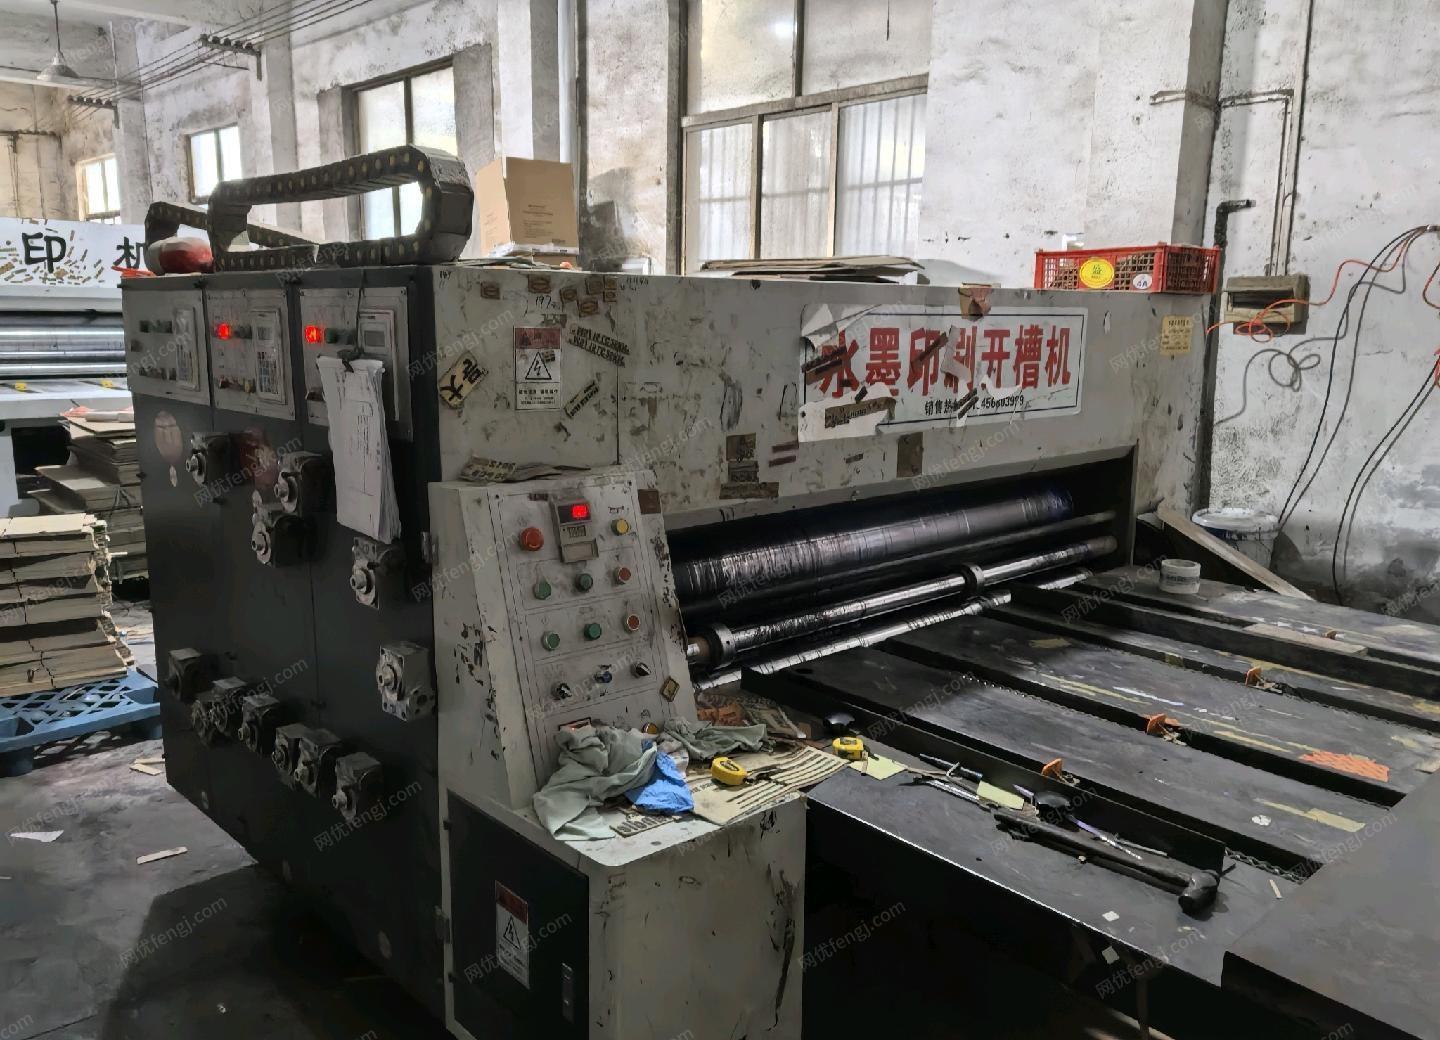 浙江宁波处理18-19年河北2000×900双色水墨开槽印刷机，处理价2万